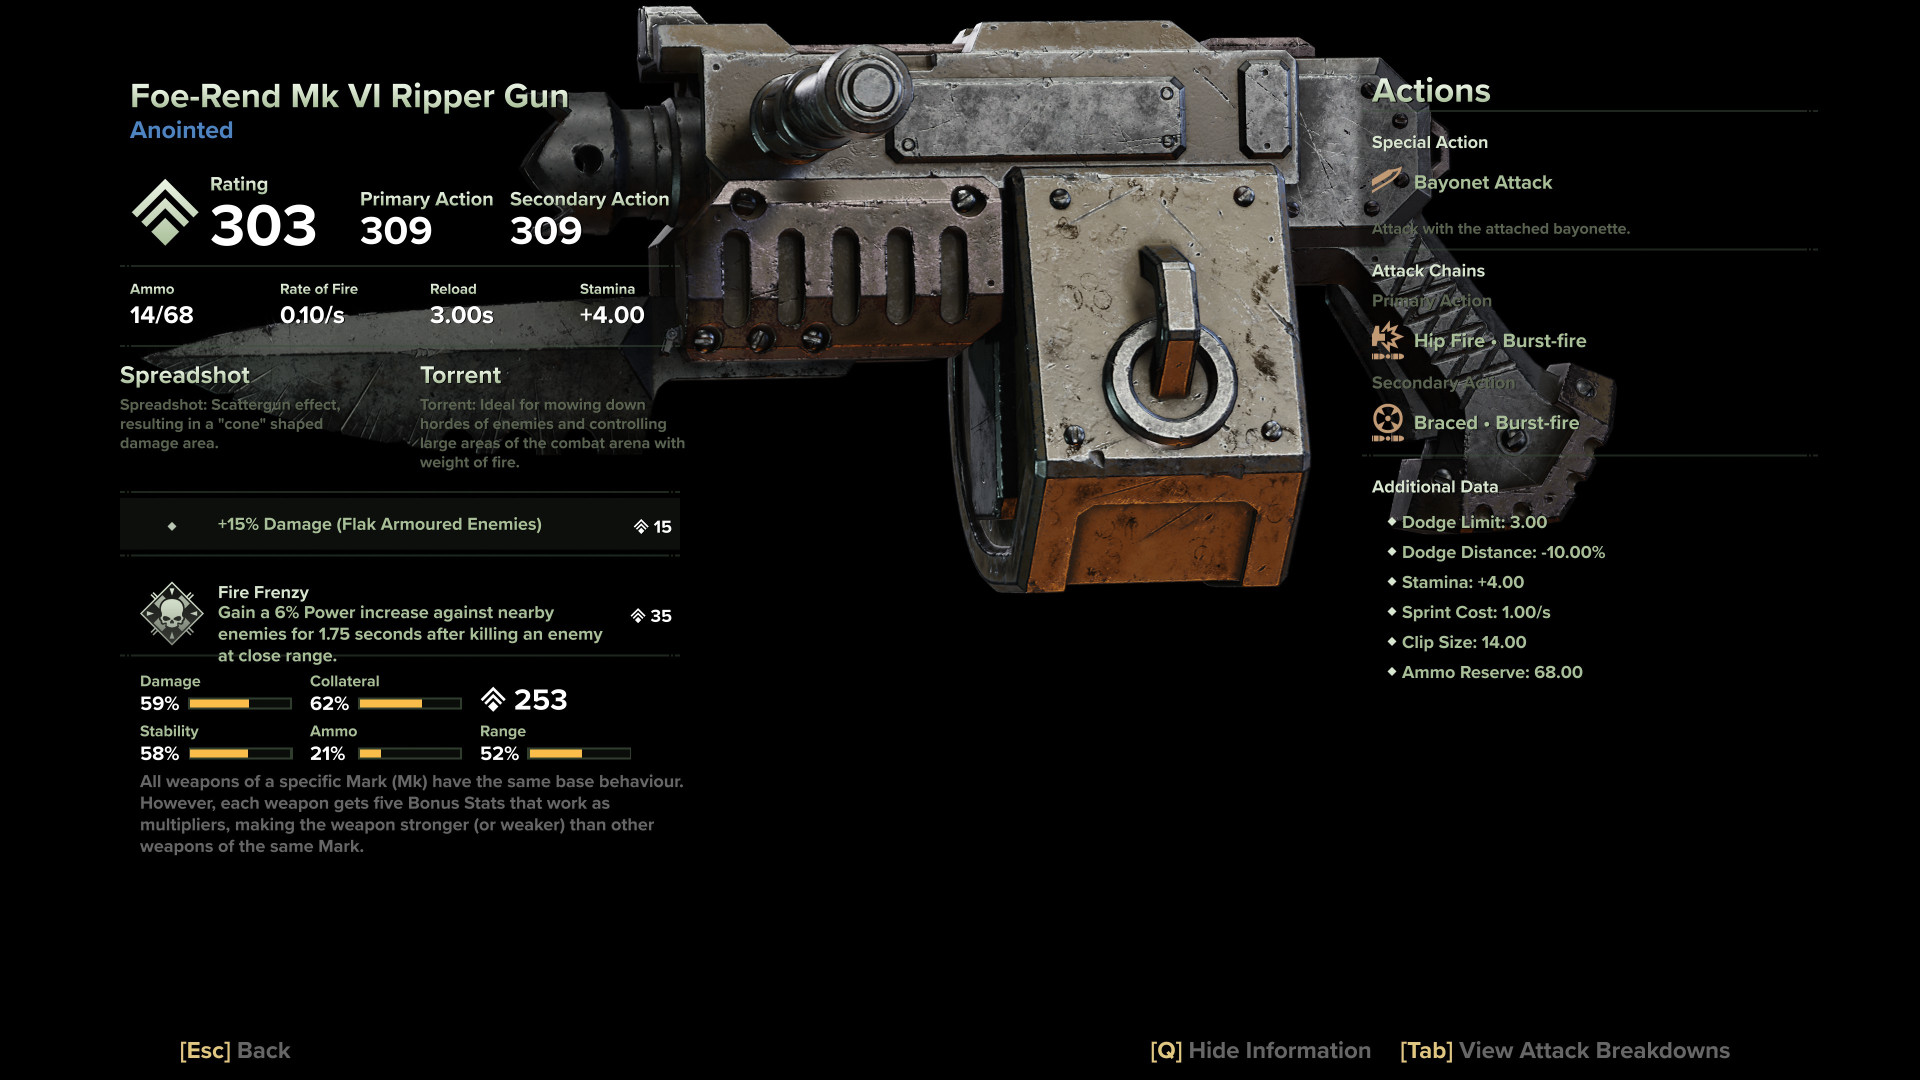 Foe-Rend Mk VI Ripper Gun